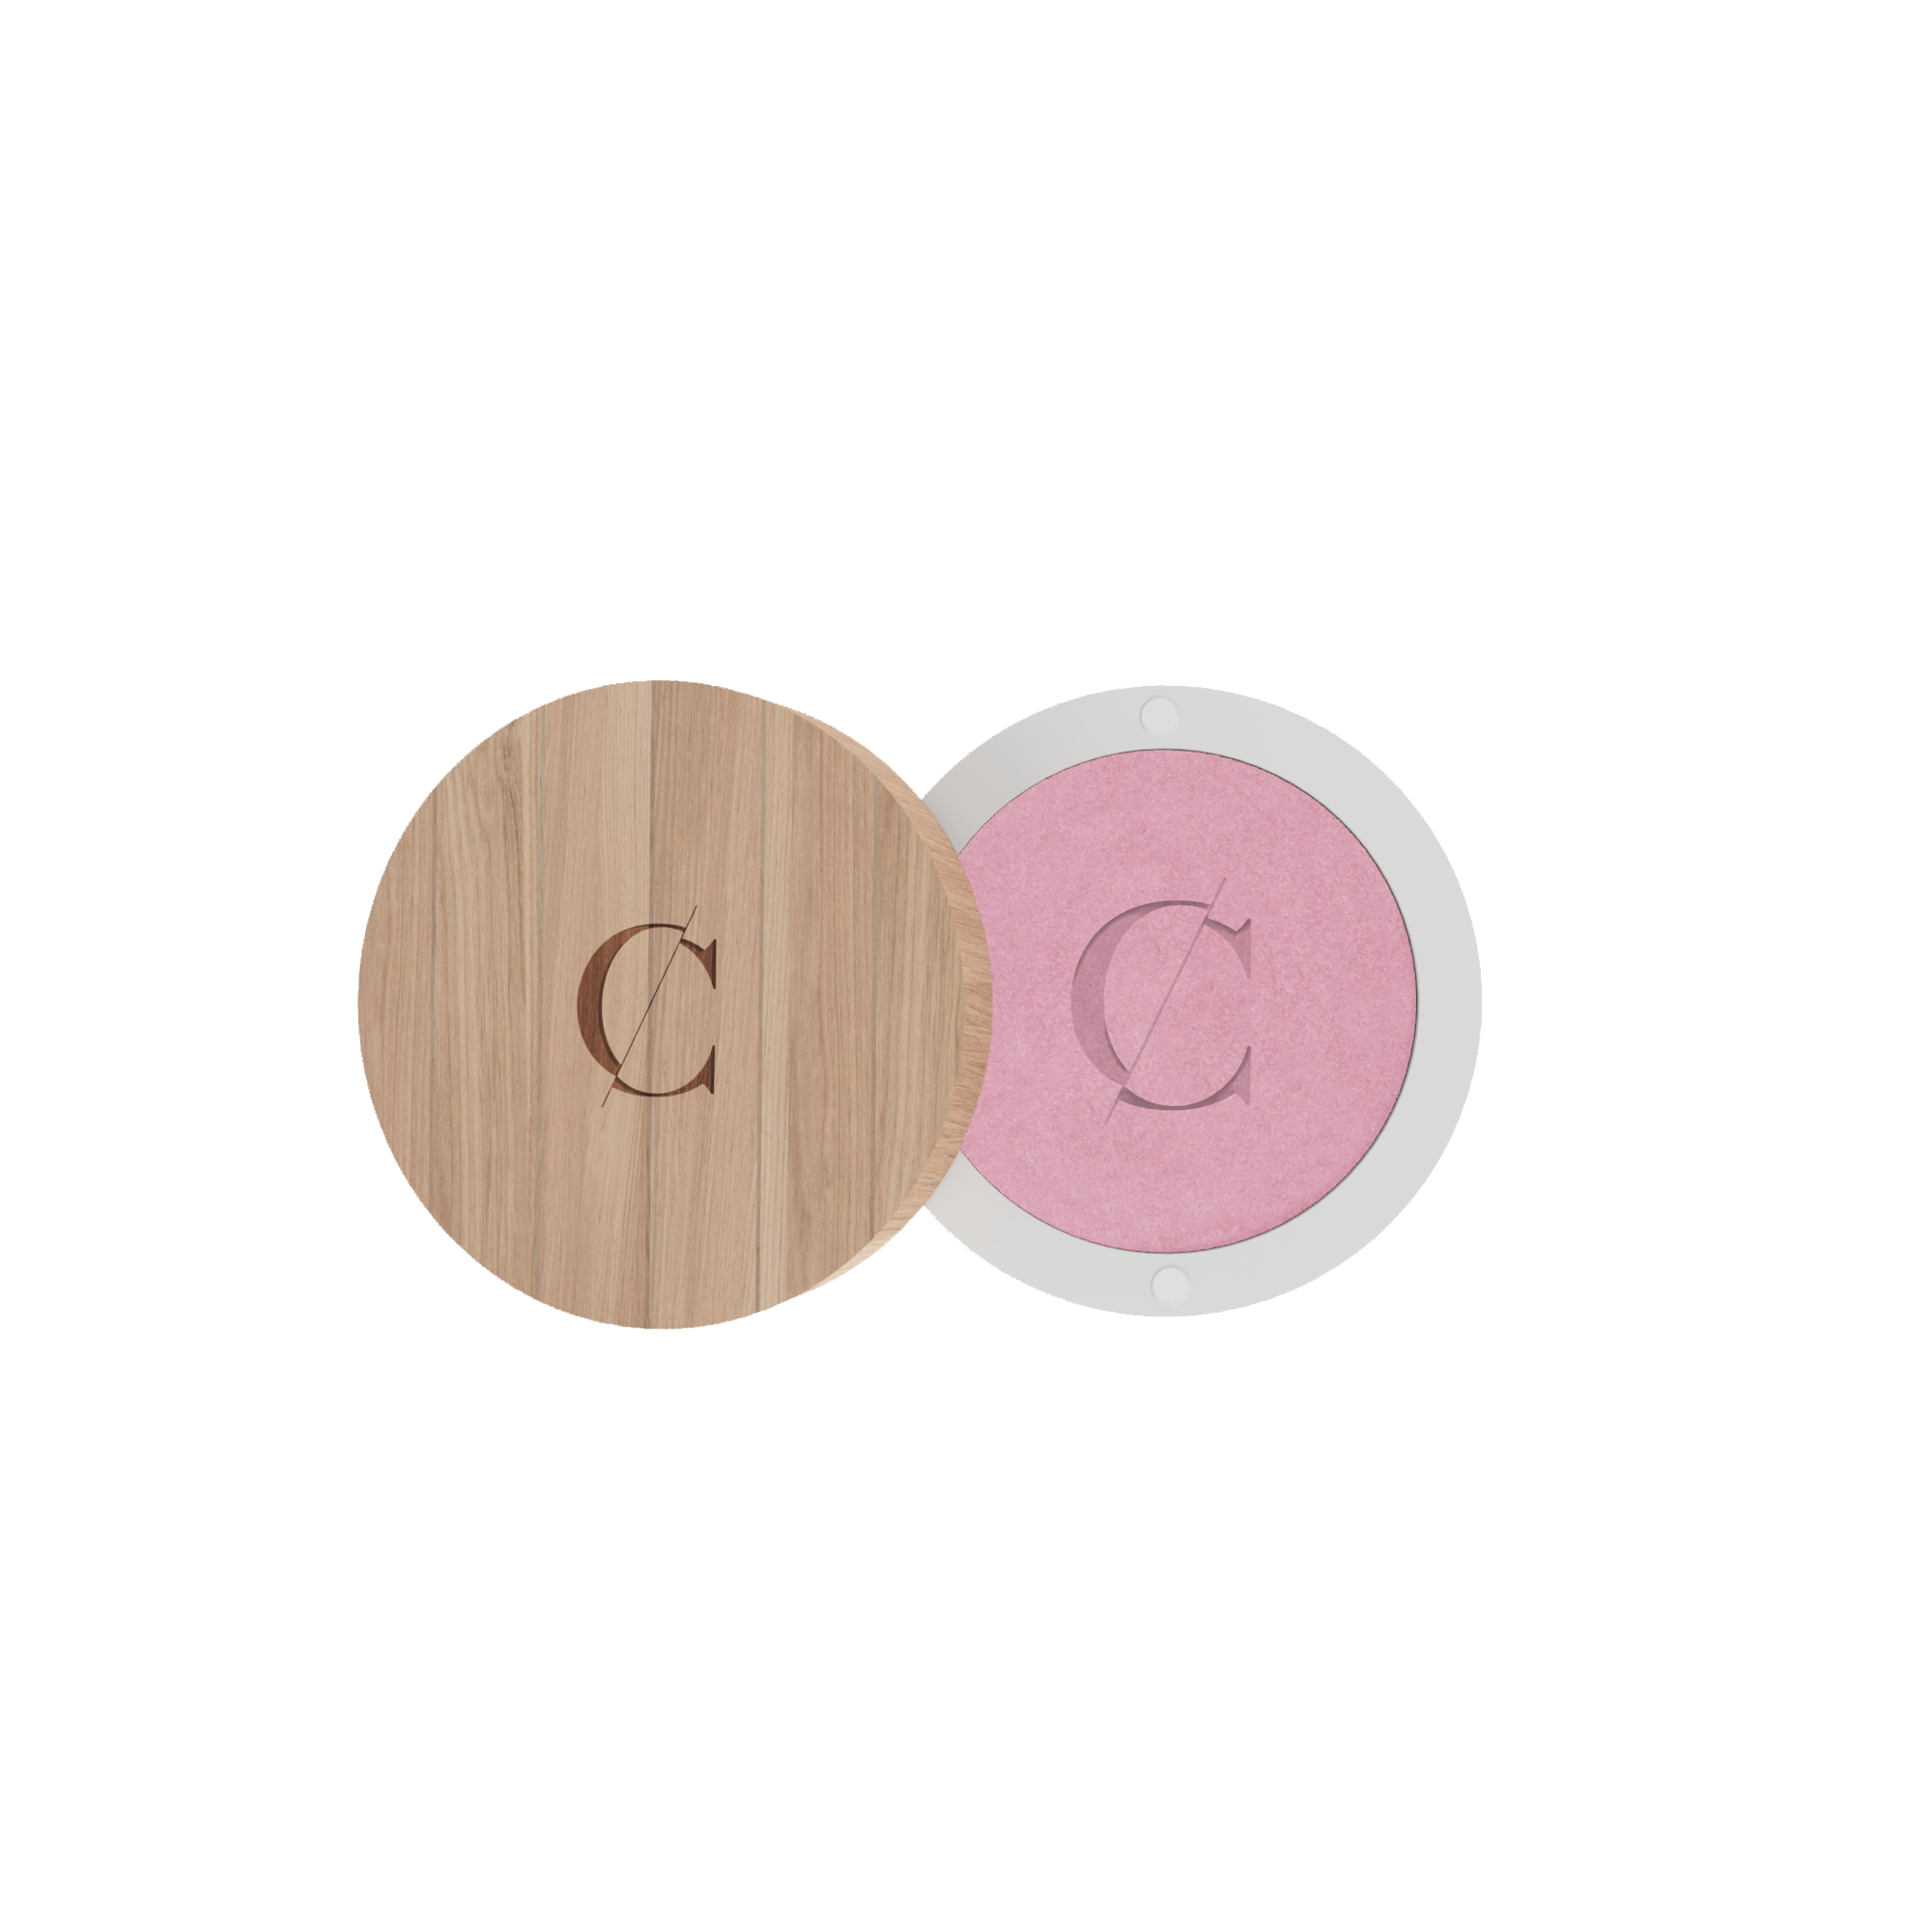 De natuurlijke en biologische oogschaduw van Couleur Caramel bevat een sterke concentratie van pigmenten.